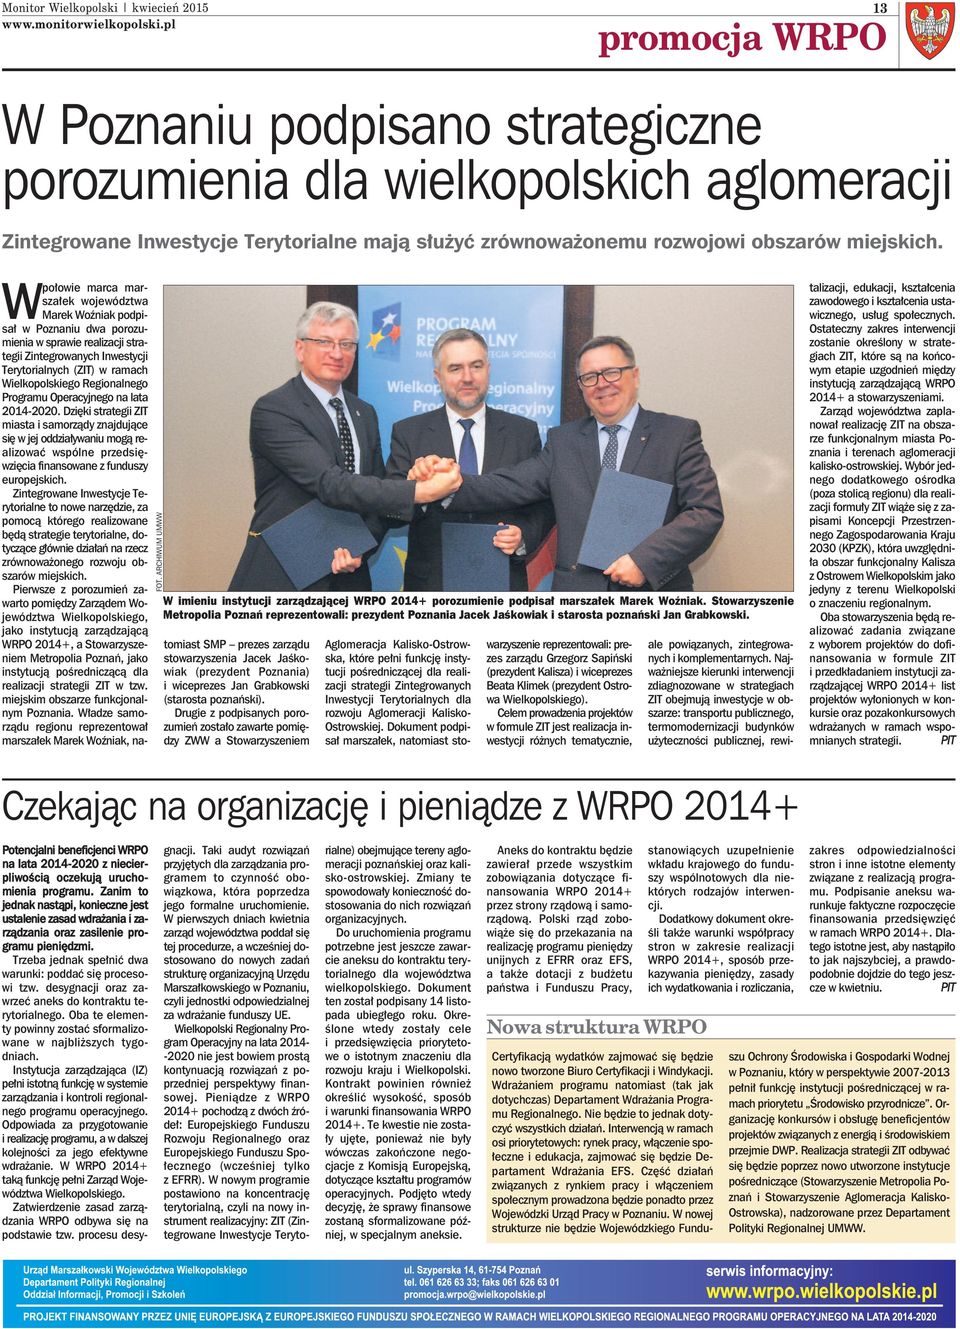 Stowarzyszenie Metropolia Poznań reprezentowali: prezydent Poznania Jacek Jaśkowiak i starosta poznański Jan Grabkowski.